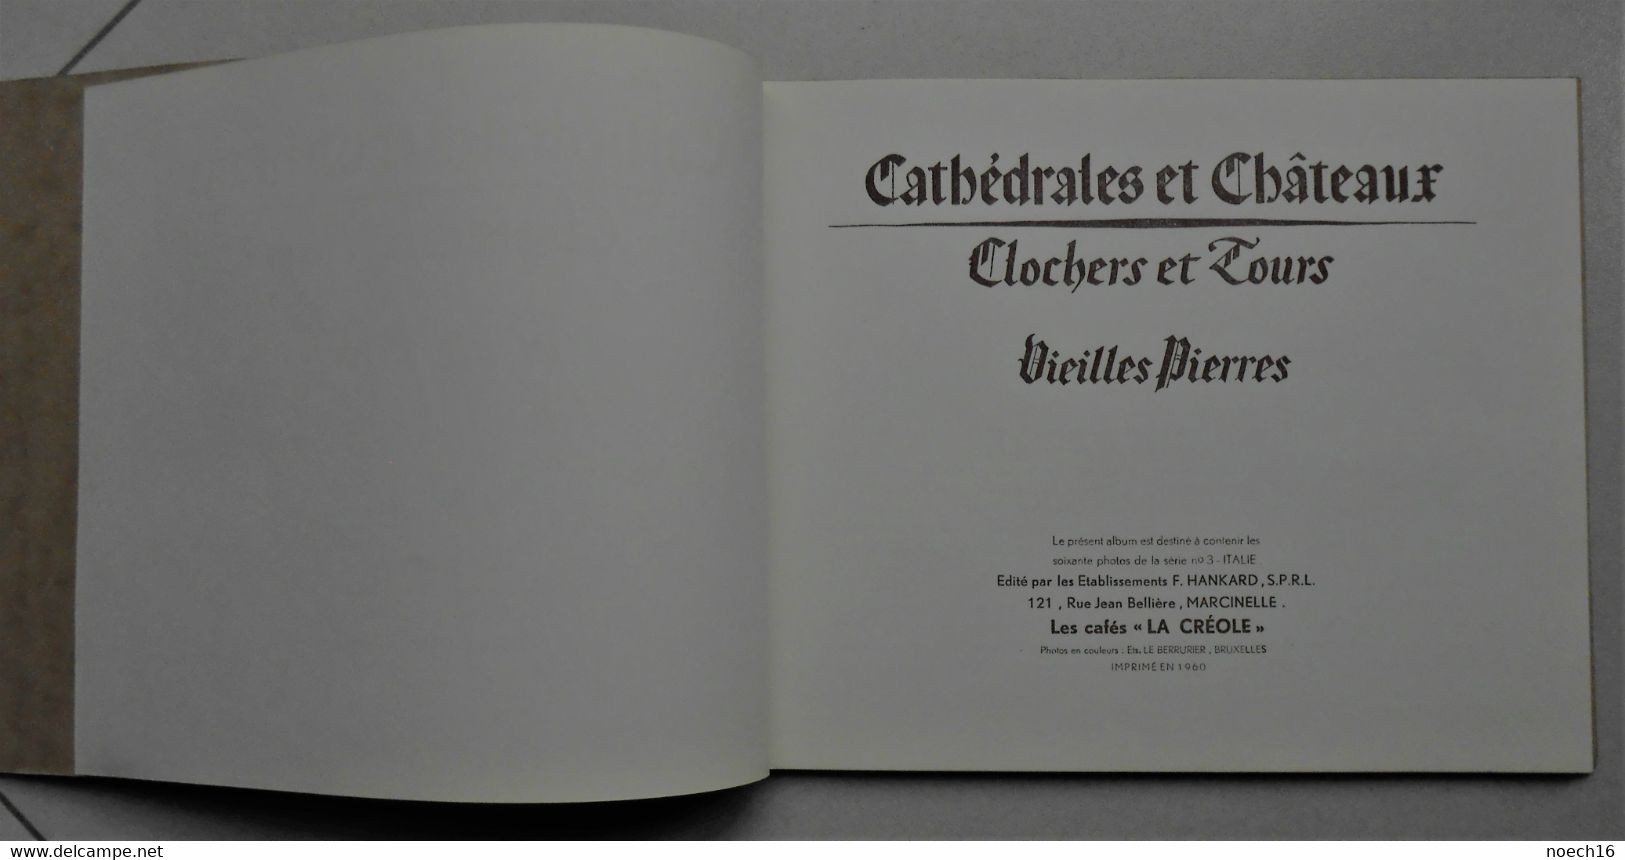 4 Albums chromos complets  - Cafés La Créole - Cathédrales et Châteaux